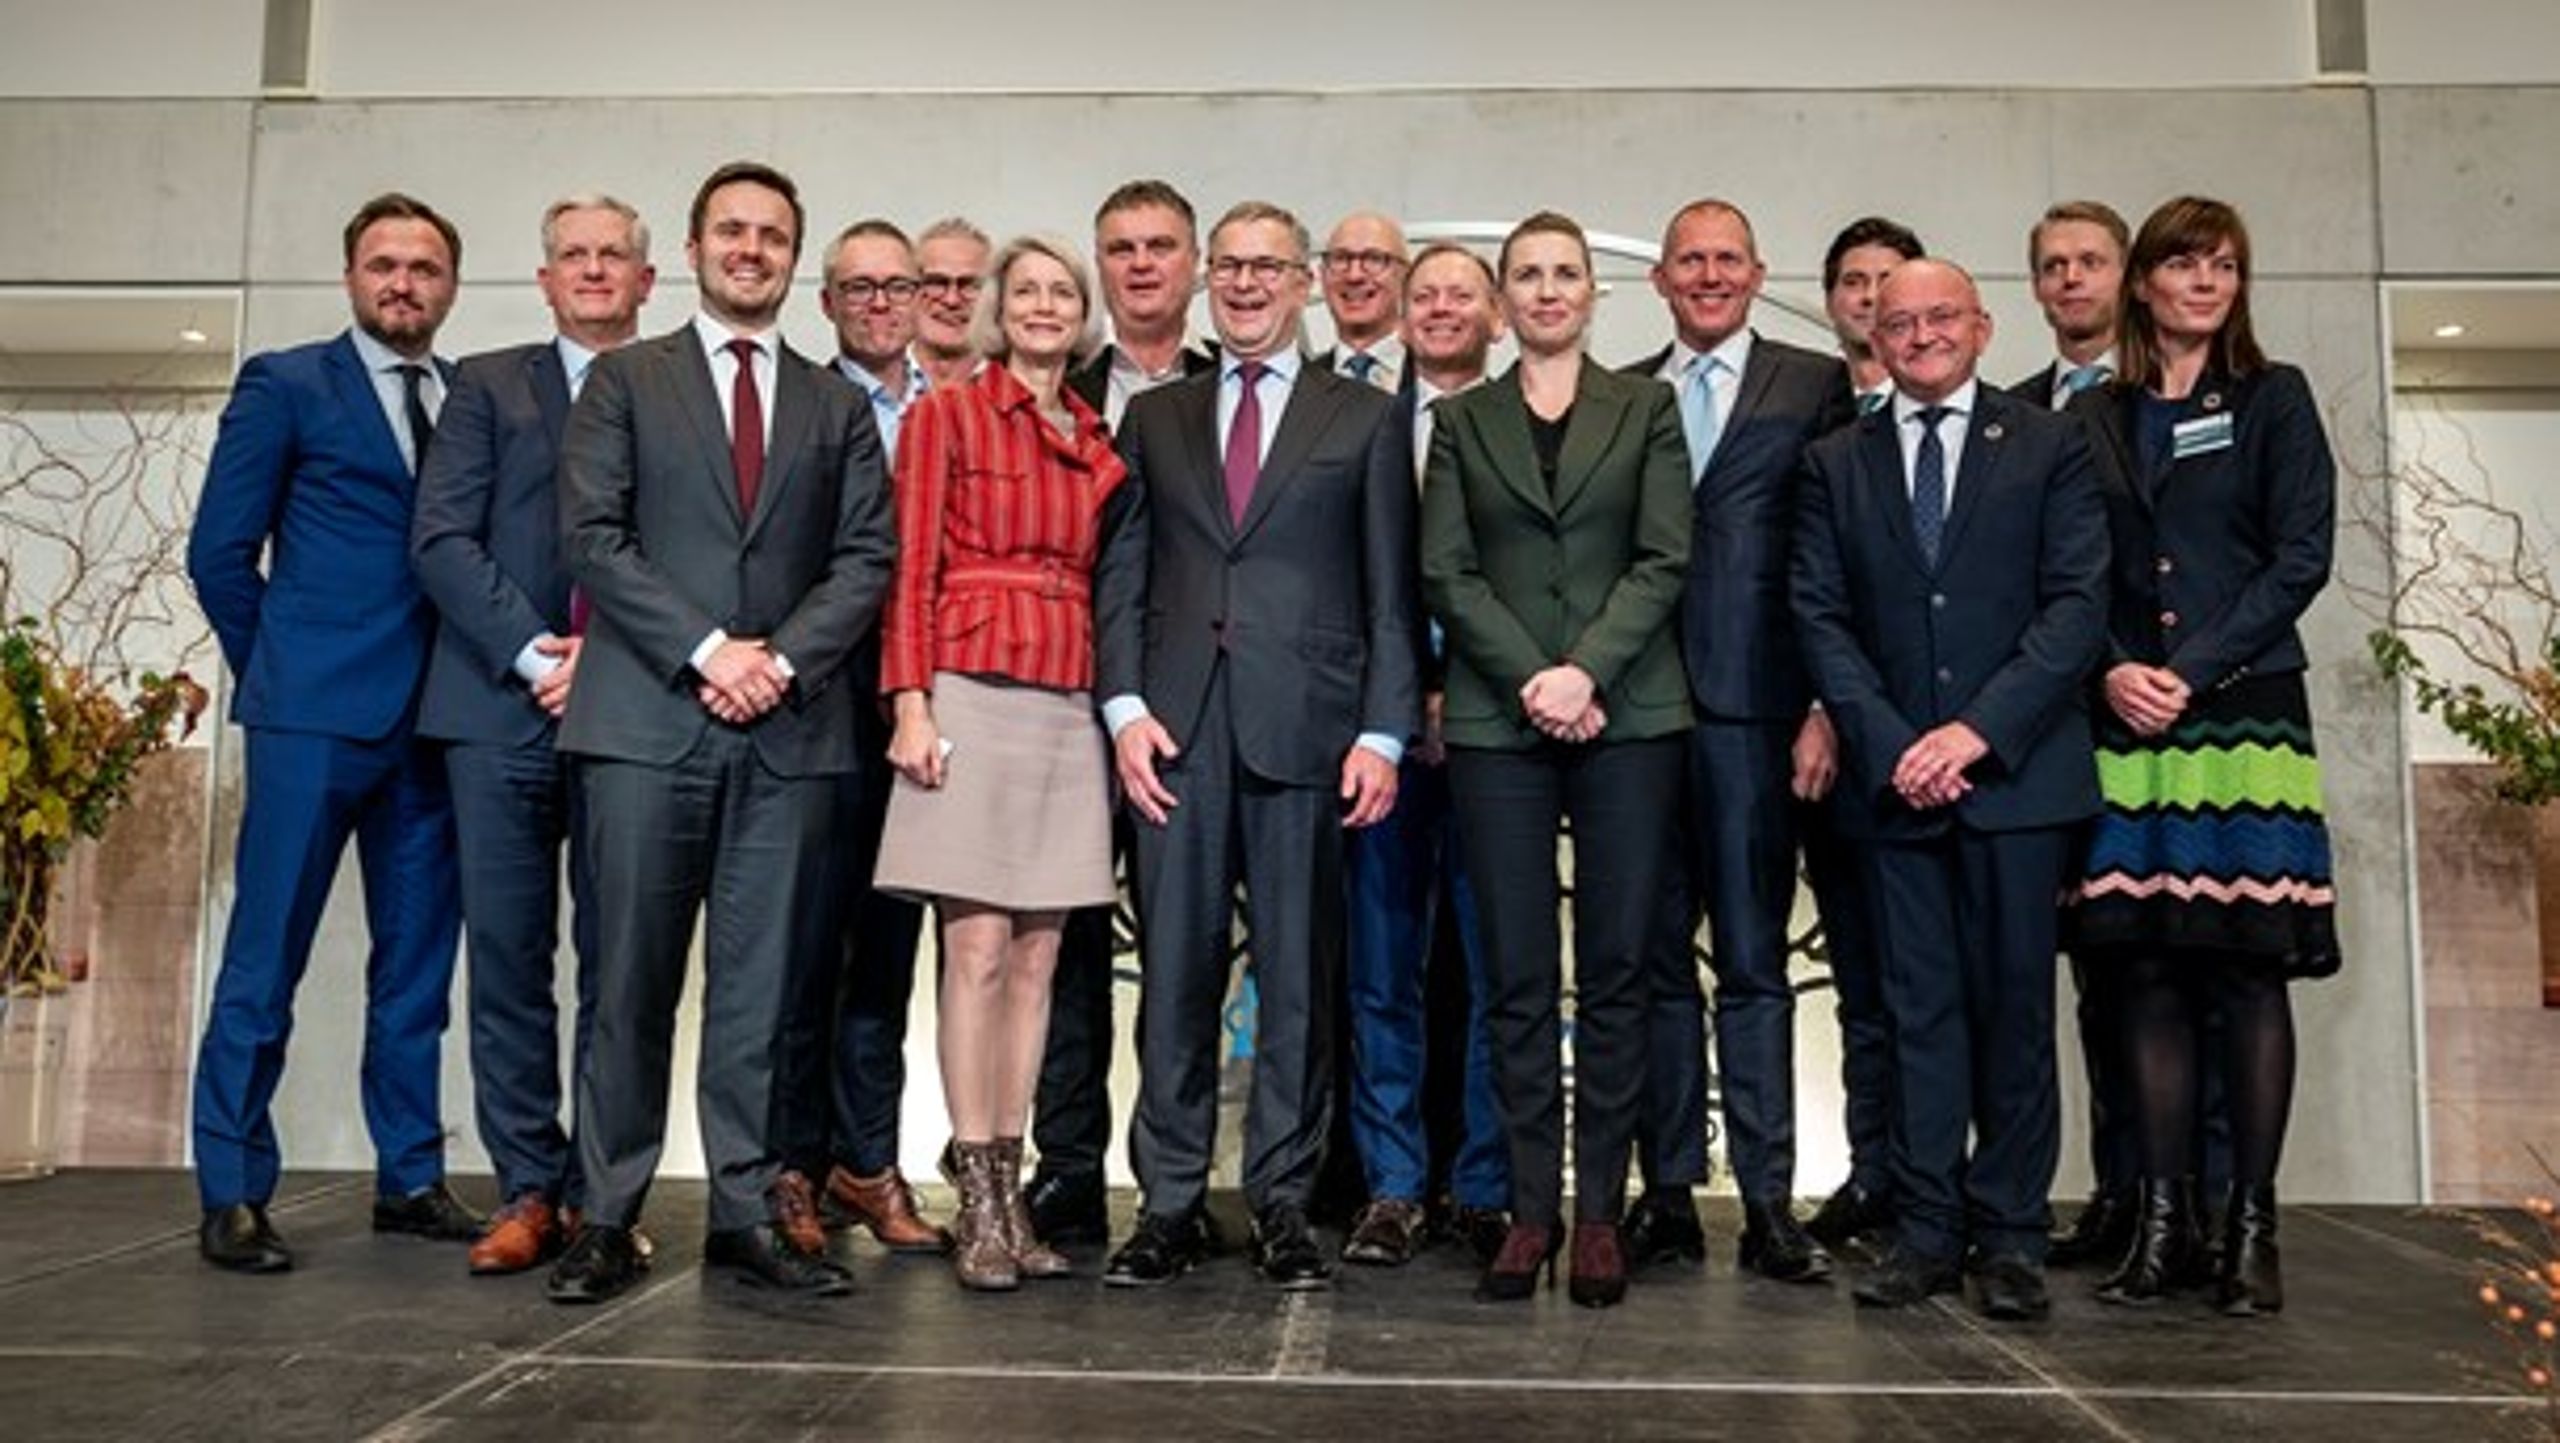 Som led i den danske klimaindsats har regeringen etableret 13 klimapartnerskaber med repræsentanter fra erhvervslivet.&nbsp;